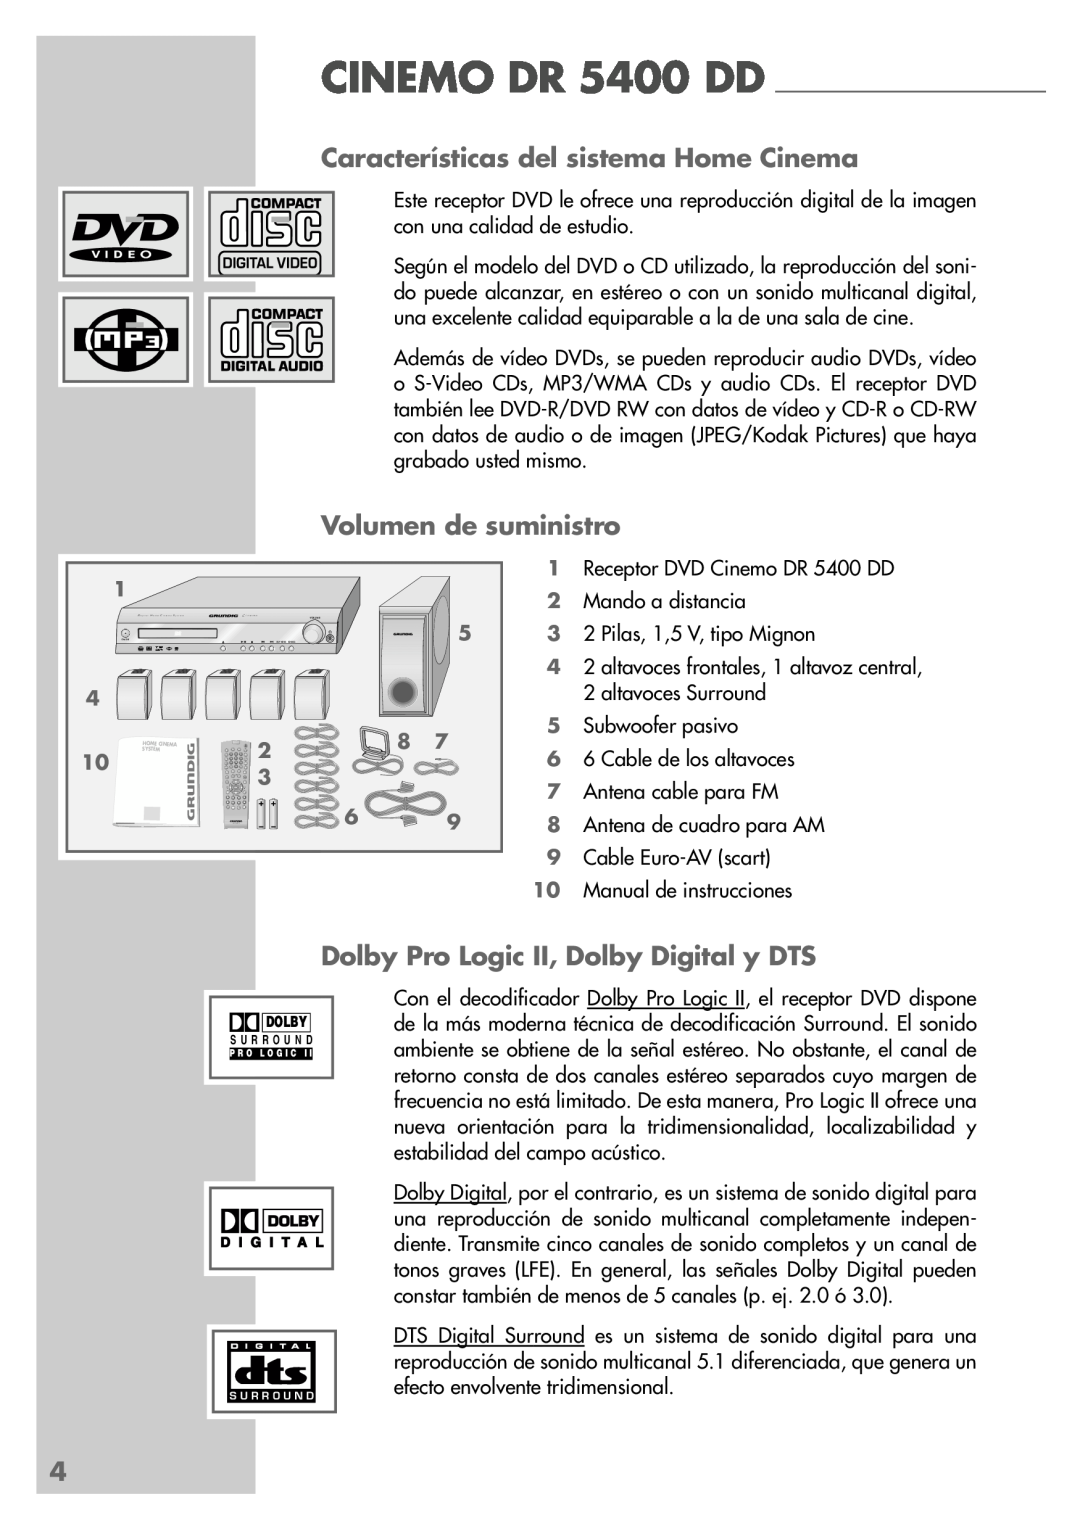 Grundig DR 5400 DD Características del sistema Home Cinema, Volumen de suministro, Dolby Pro Logic II, Dolby Digital y DTS 